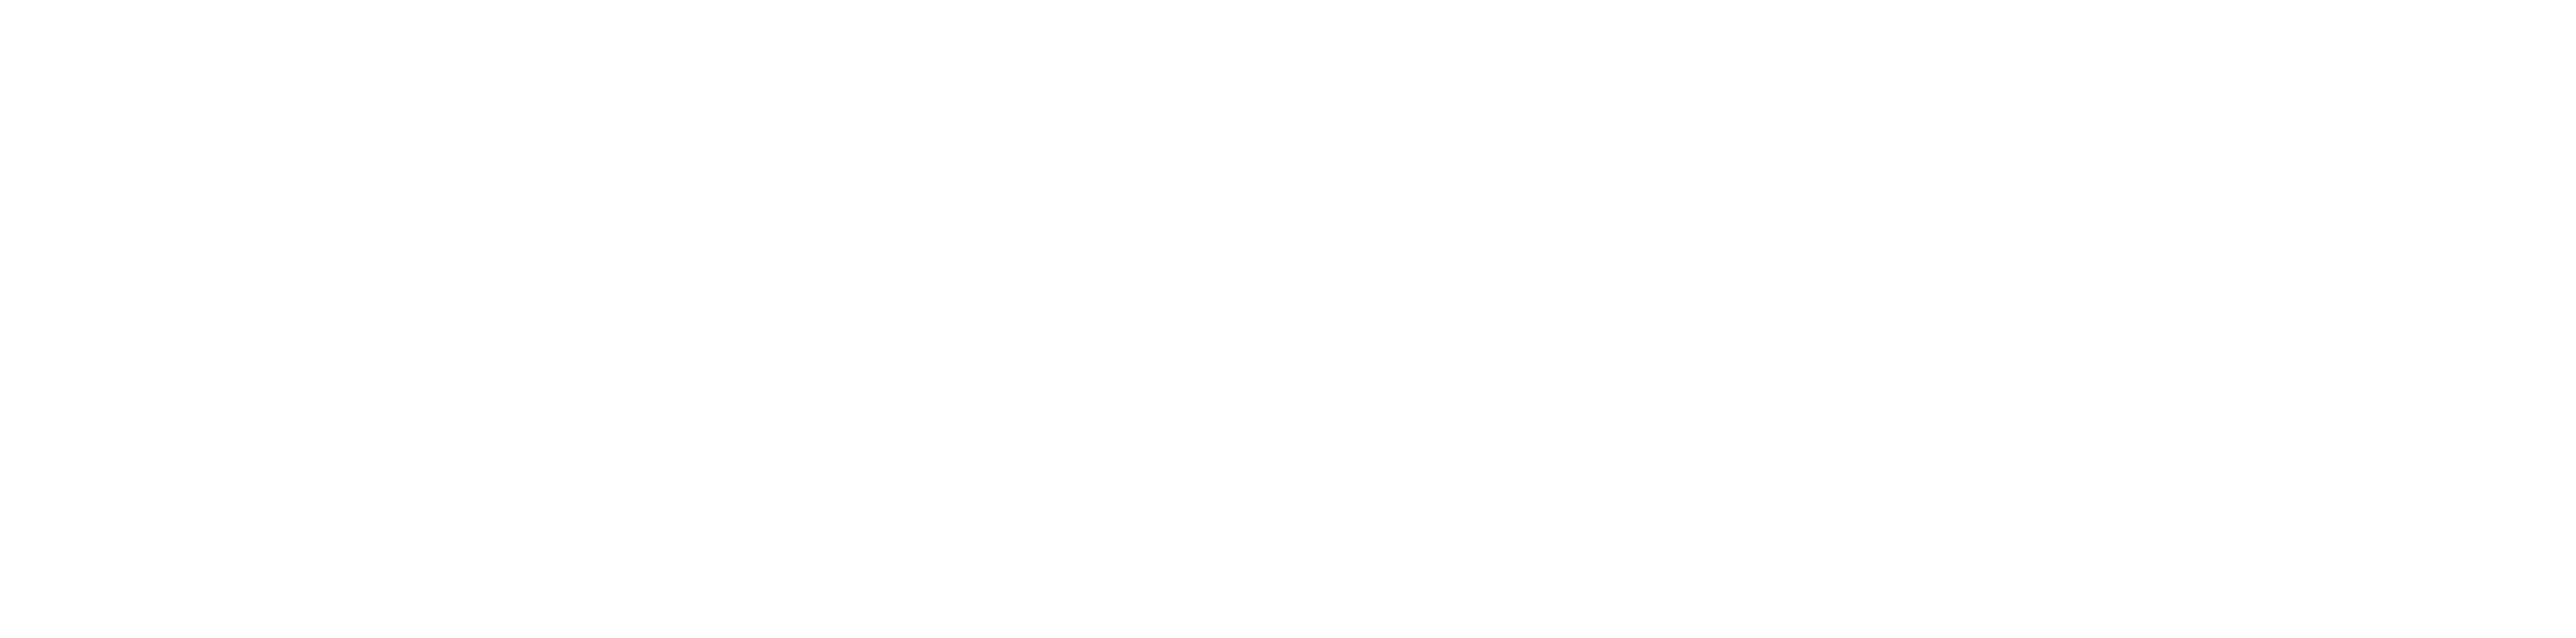 shoreline logo - lake erie branding marketing